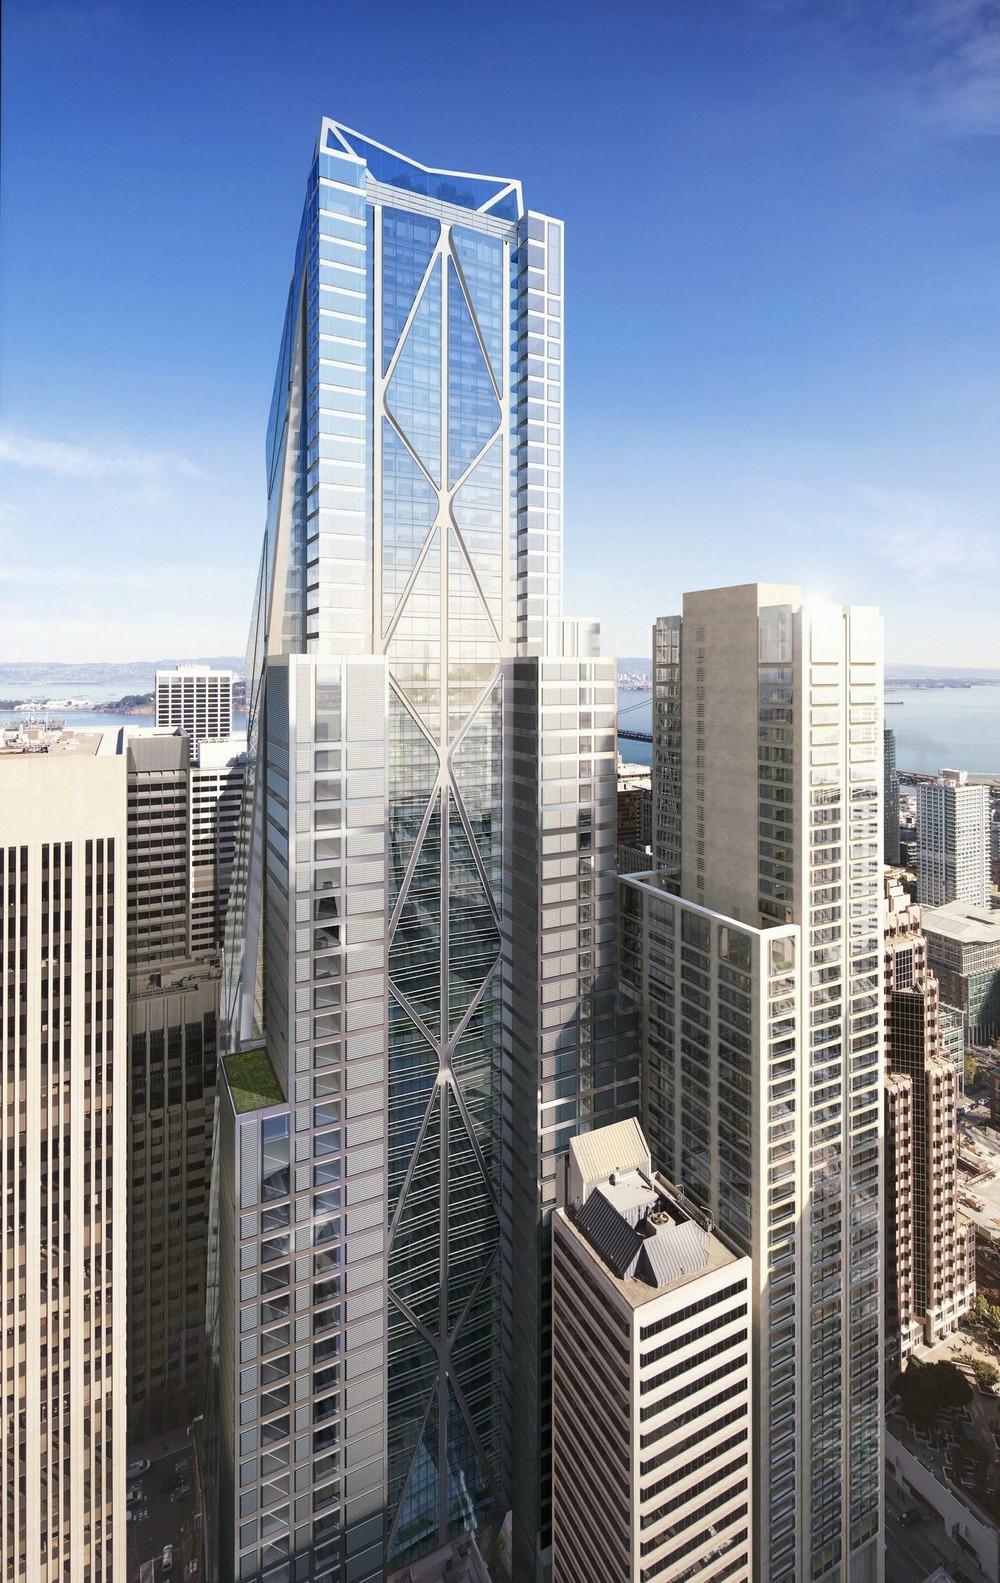 San Francisco Architecture News - e-architect